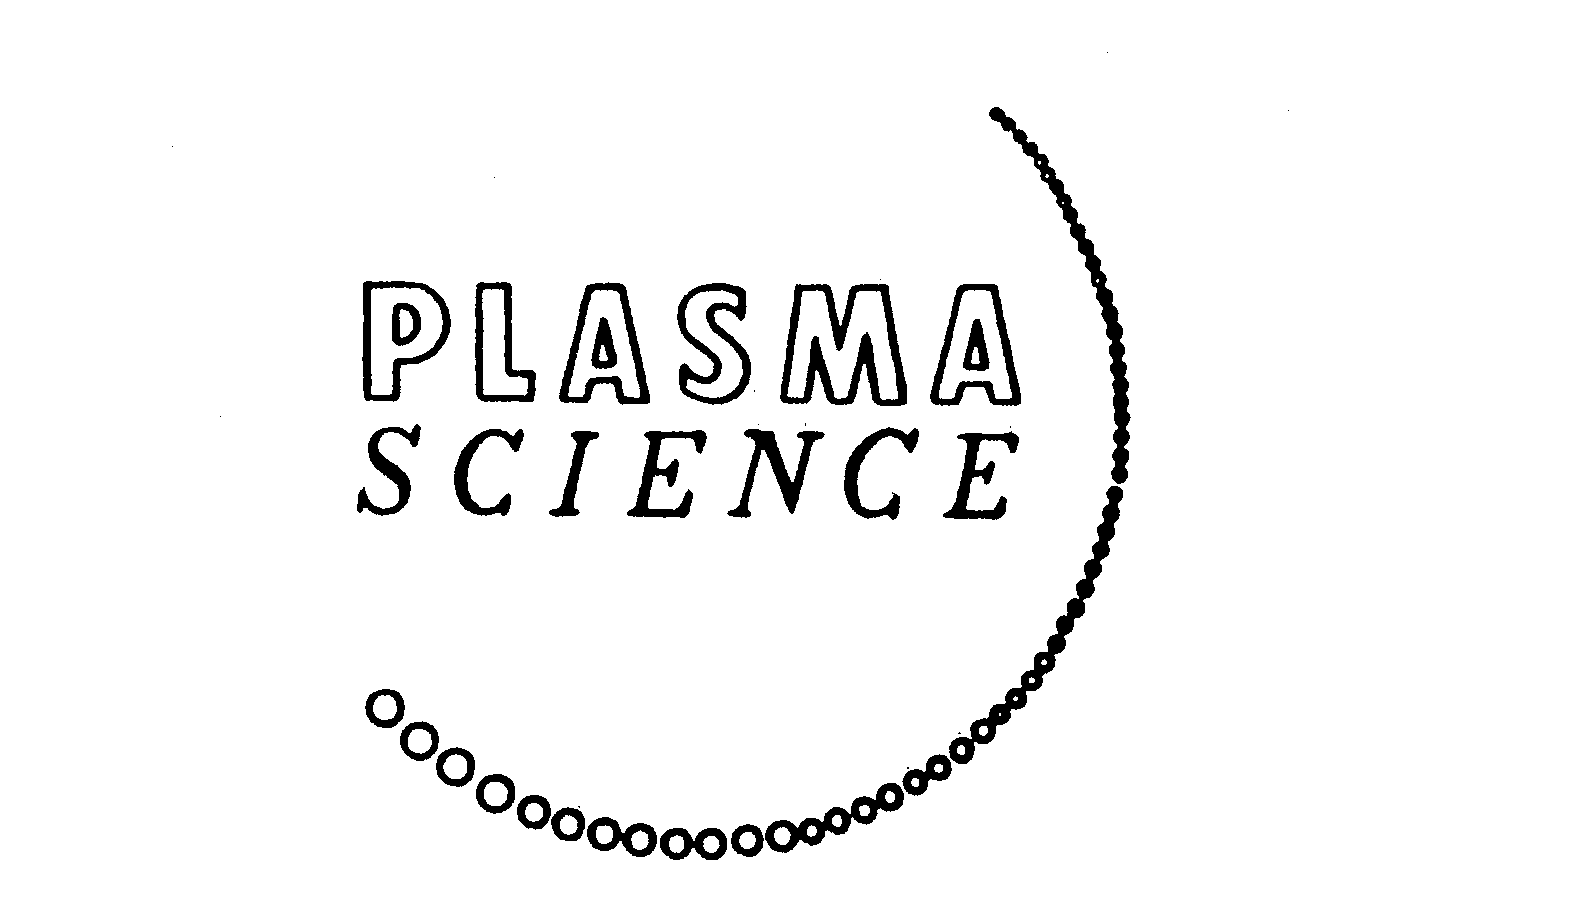  PLASMA SCIENCE